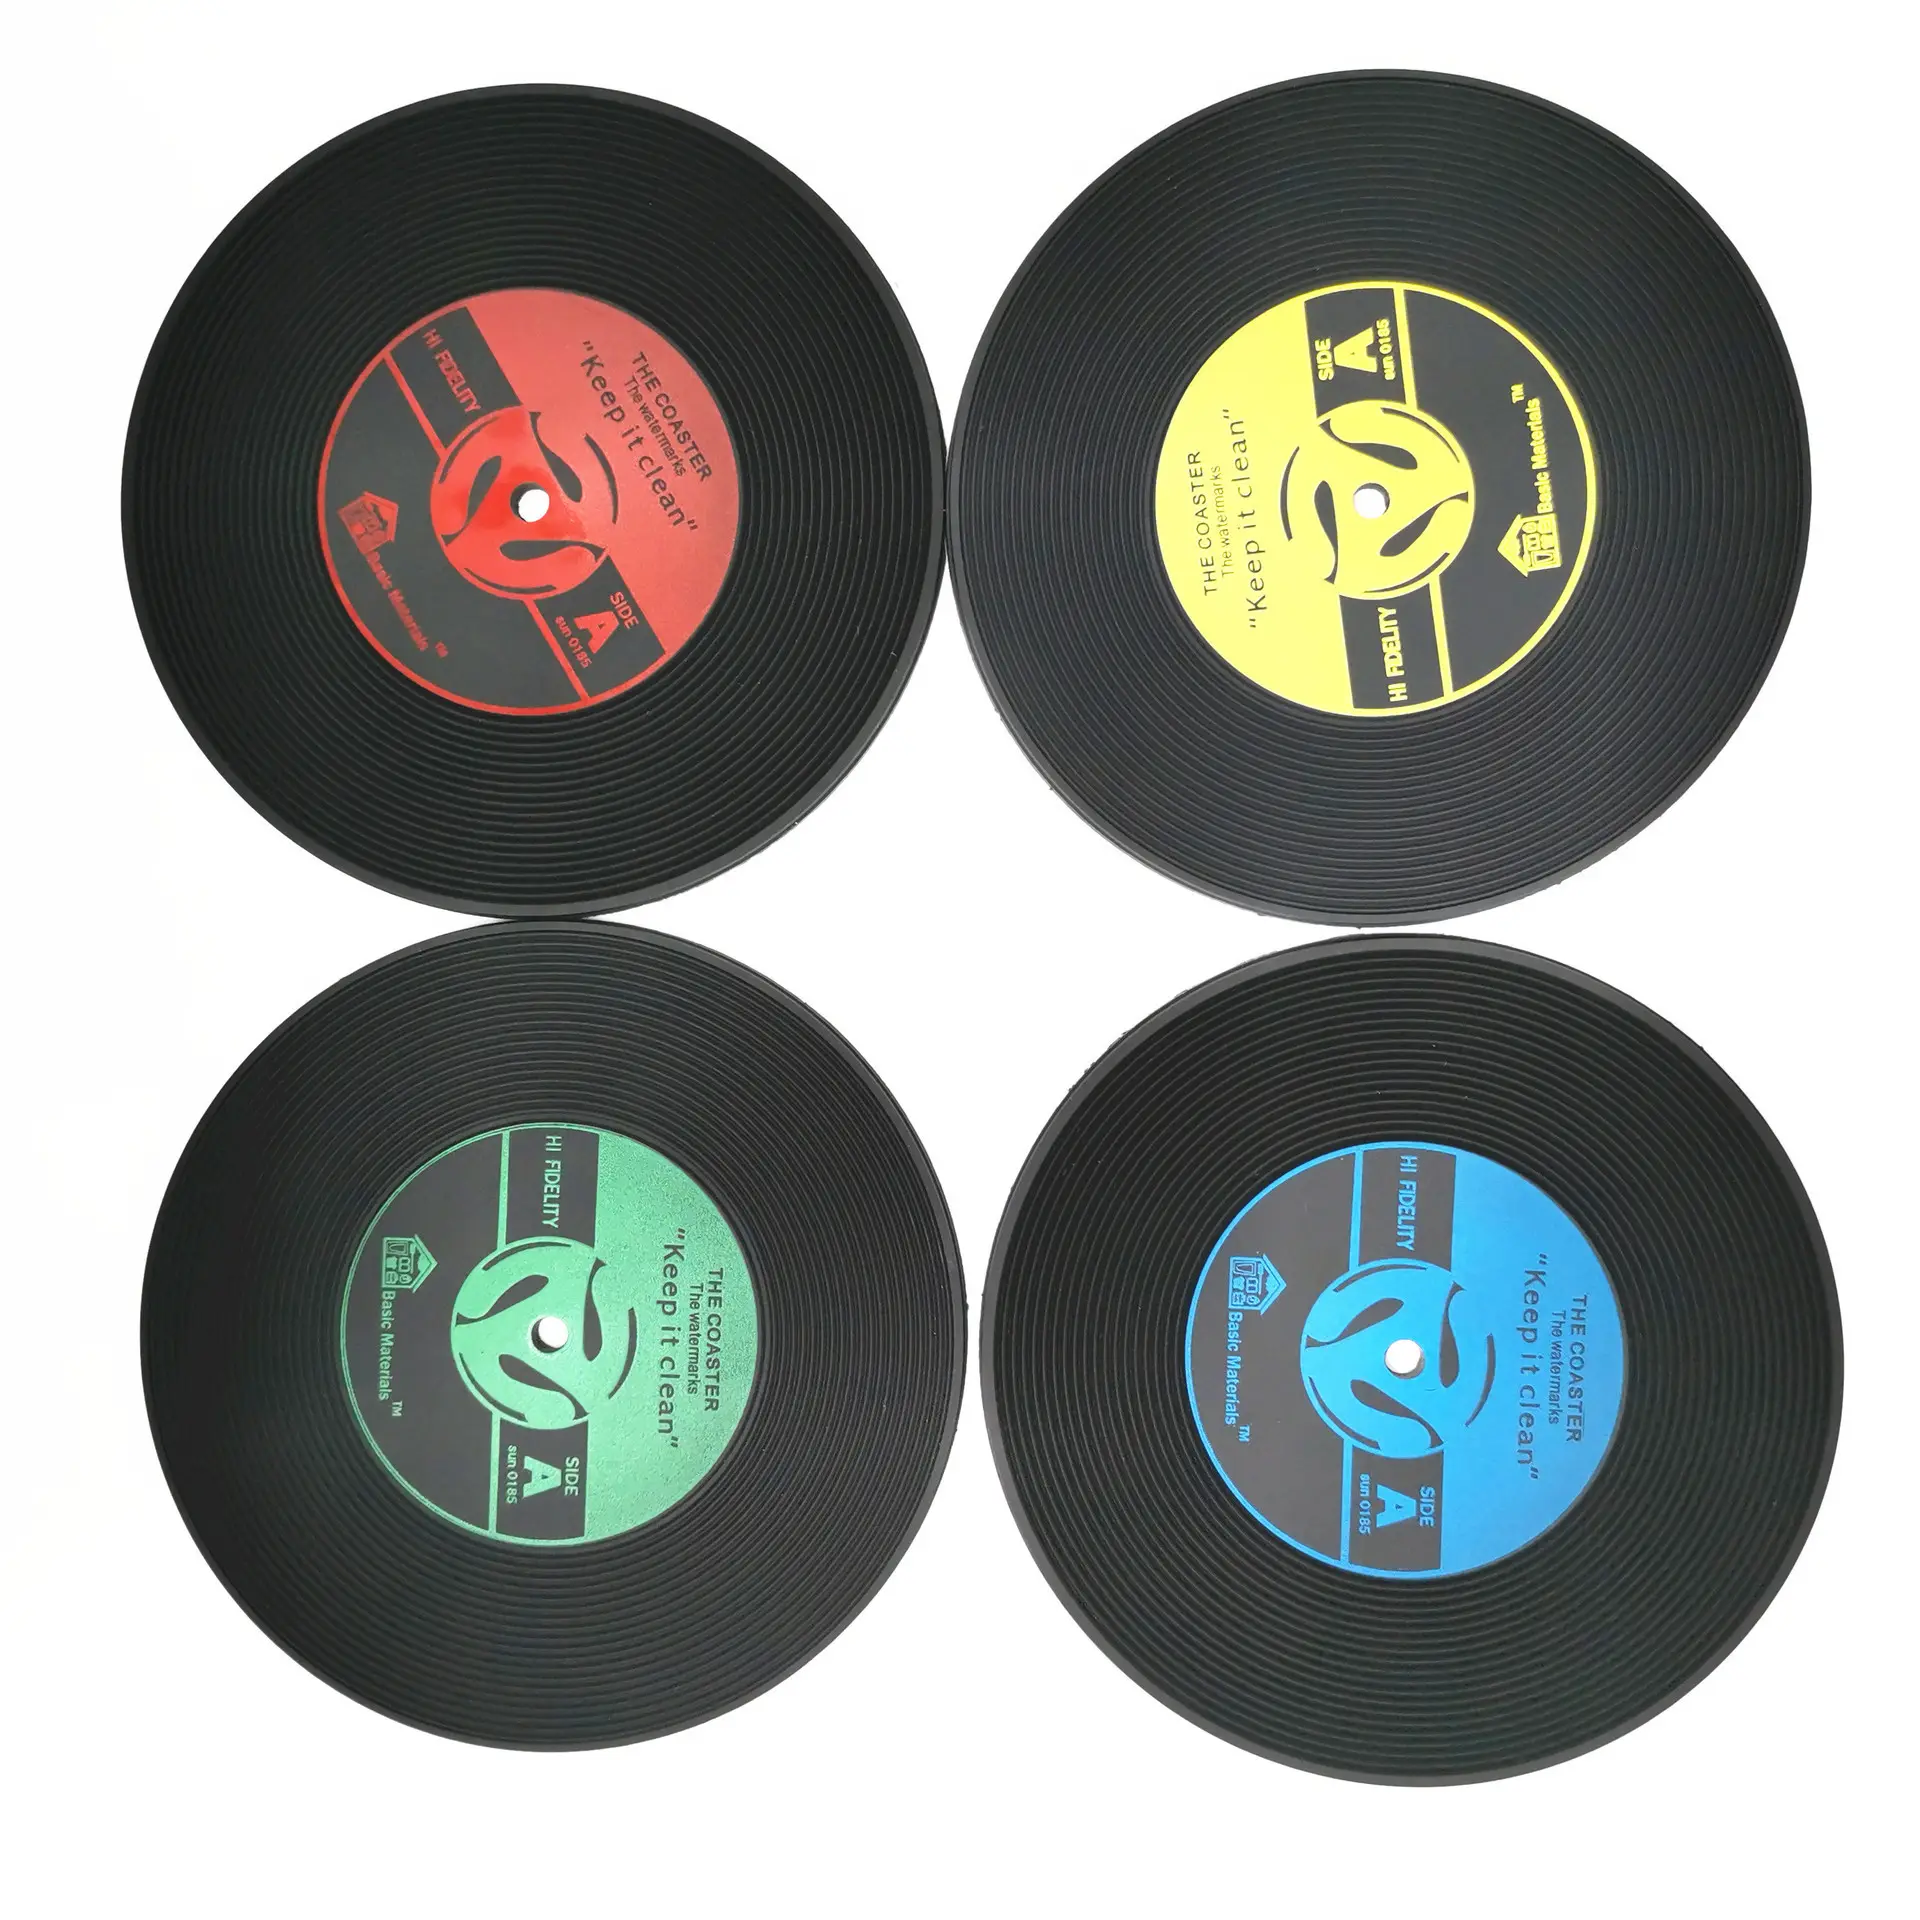 गर्म बेचने कस्टम पीवीसी रबर सीडी रिकॉर्ड डिस्क के साथ कप Coasters सिलिकॉन गैर पर्ची अंगूठी पेय मग के लिए आधार धारक